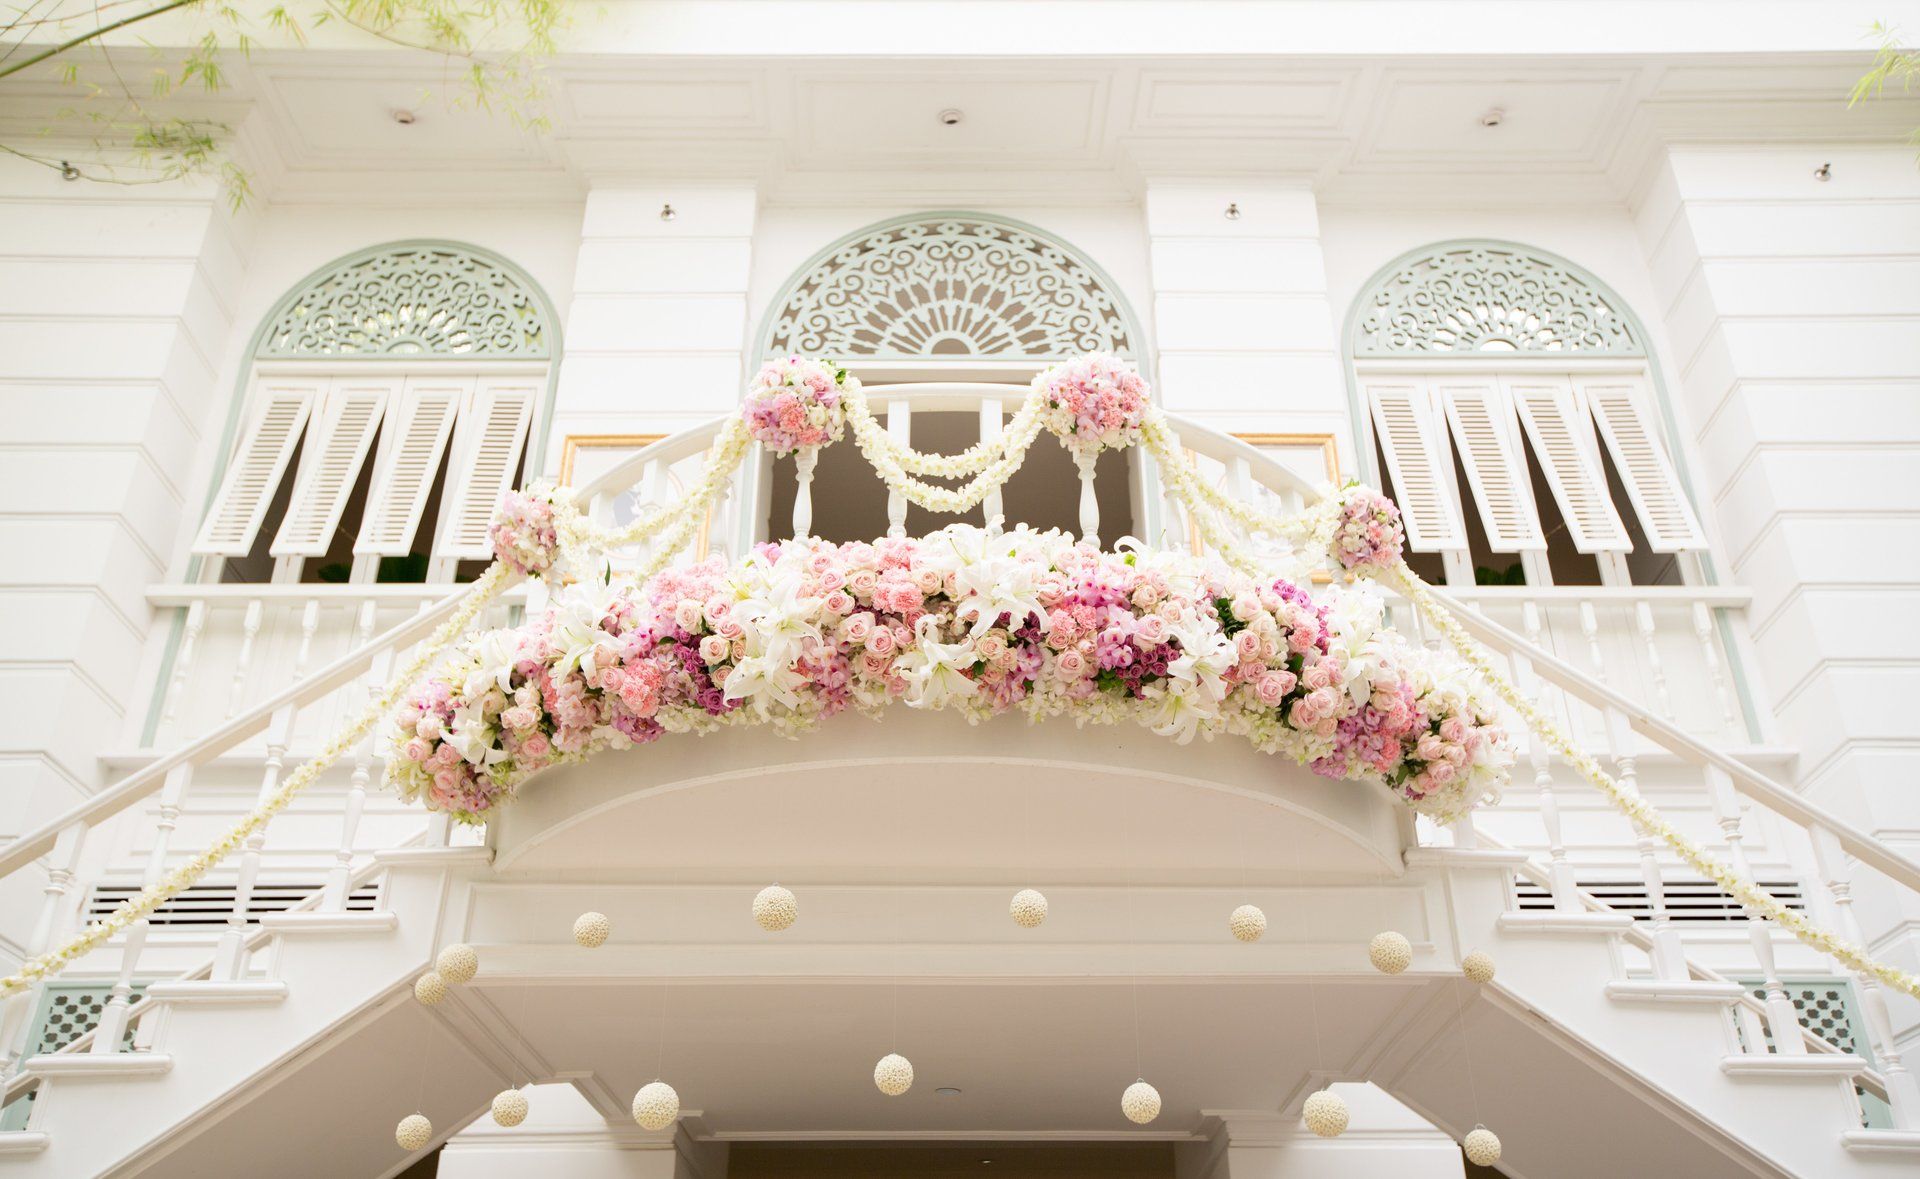 Décoration florale dans la salle de mariage vintage et élégante